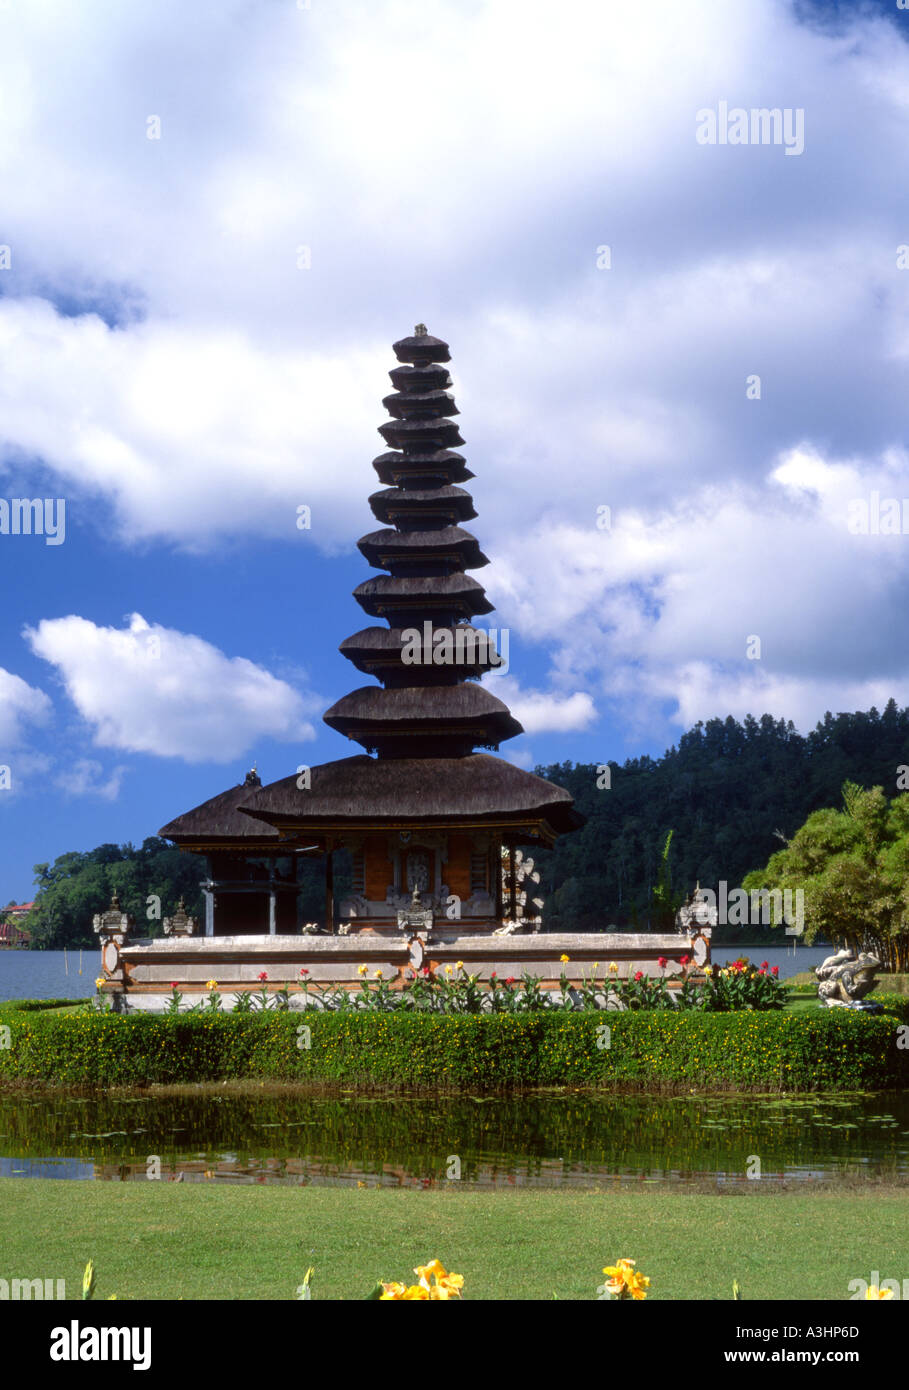 temple on the lake puru ulun dano bratan kandikuning bali indonesia Stock Photo